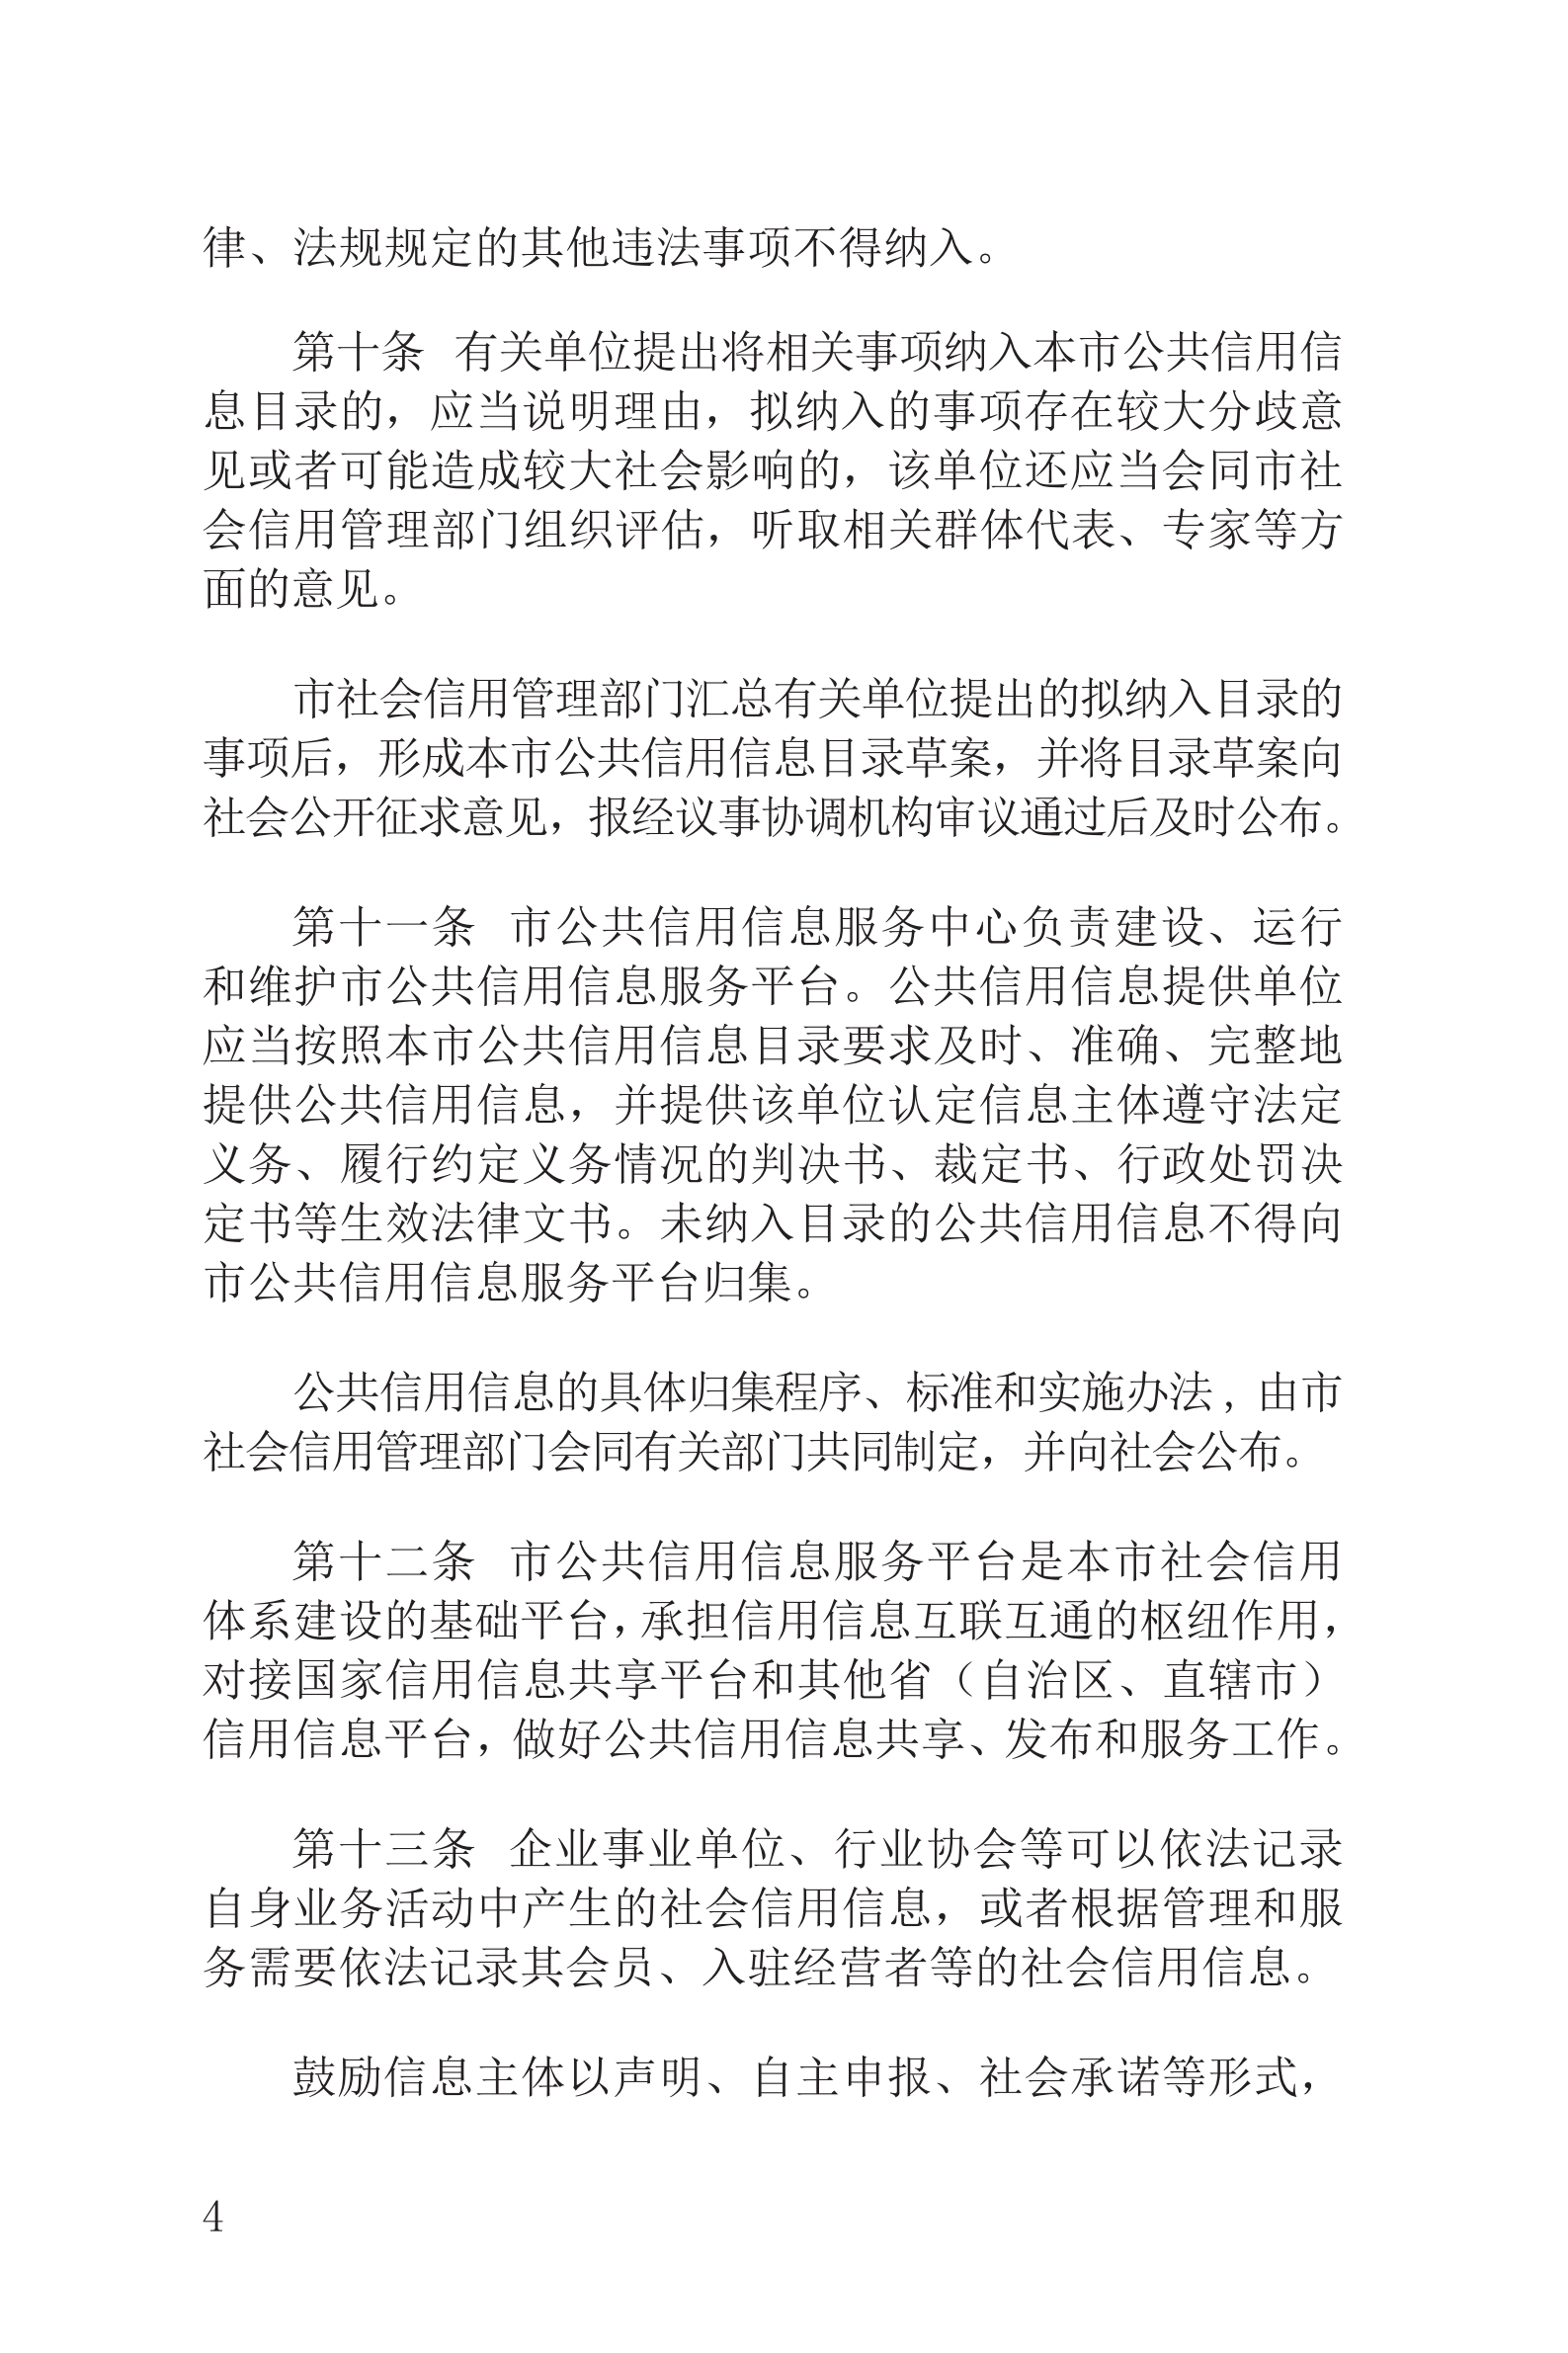 上海市社会信用条例_05.png